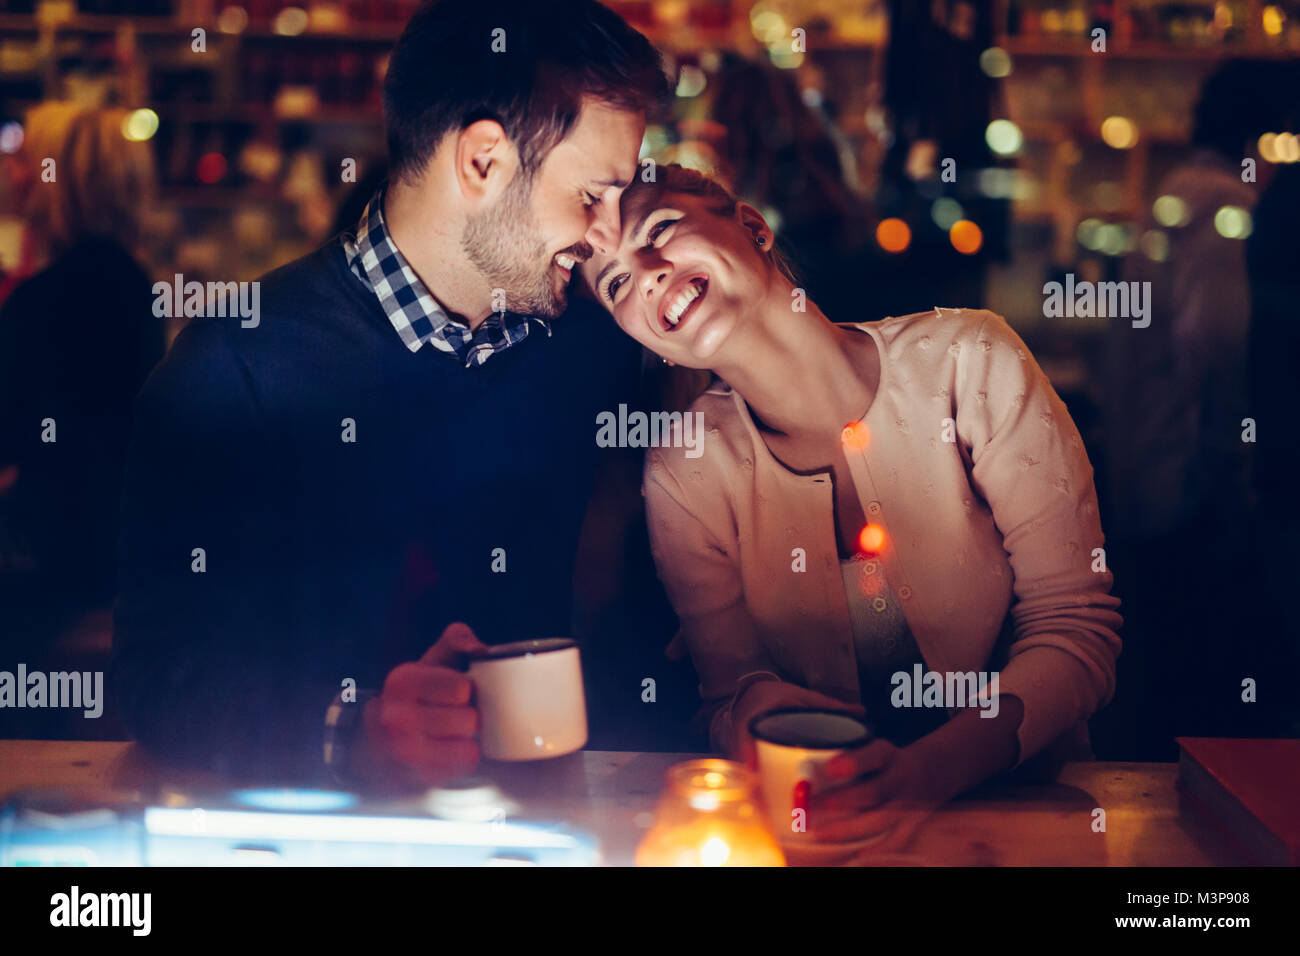 Romantisch zu zweit aus dem Pub in der Nacht Stockfoto